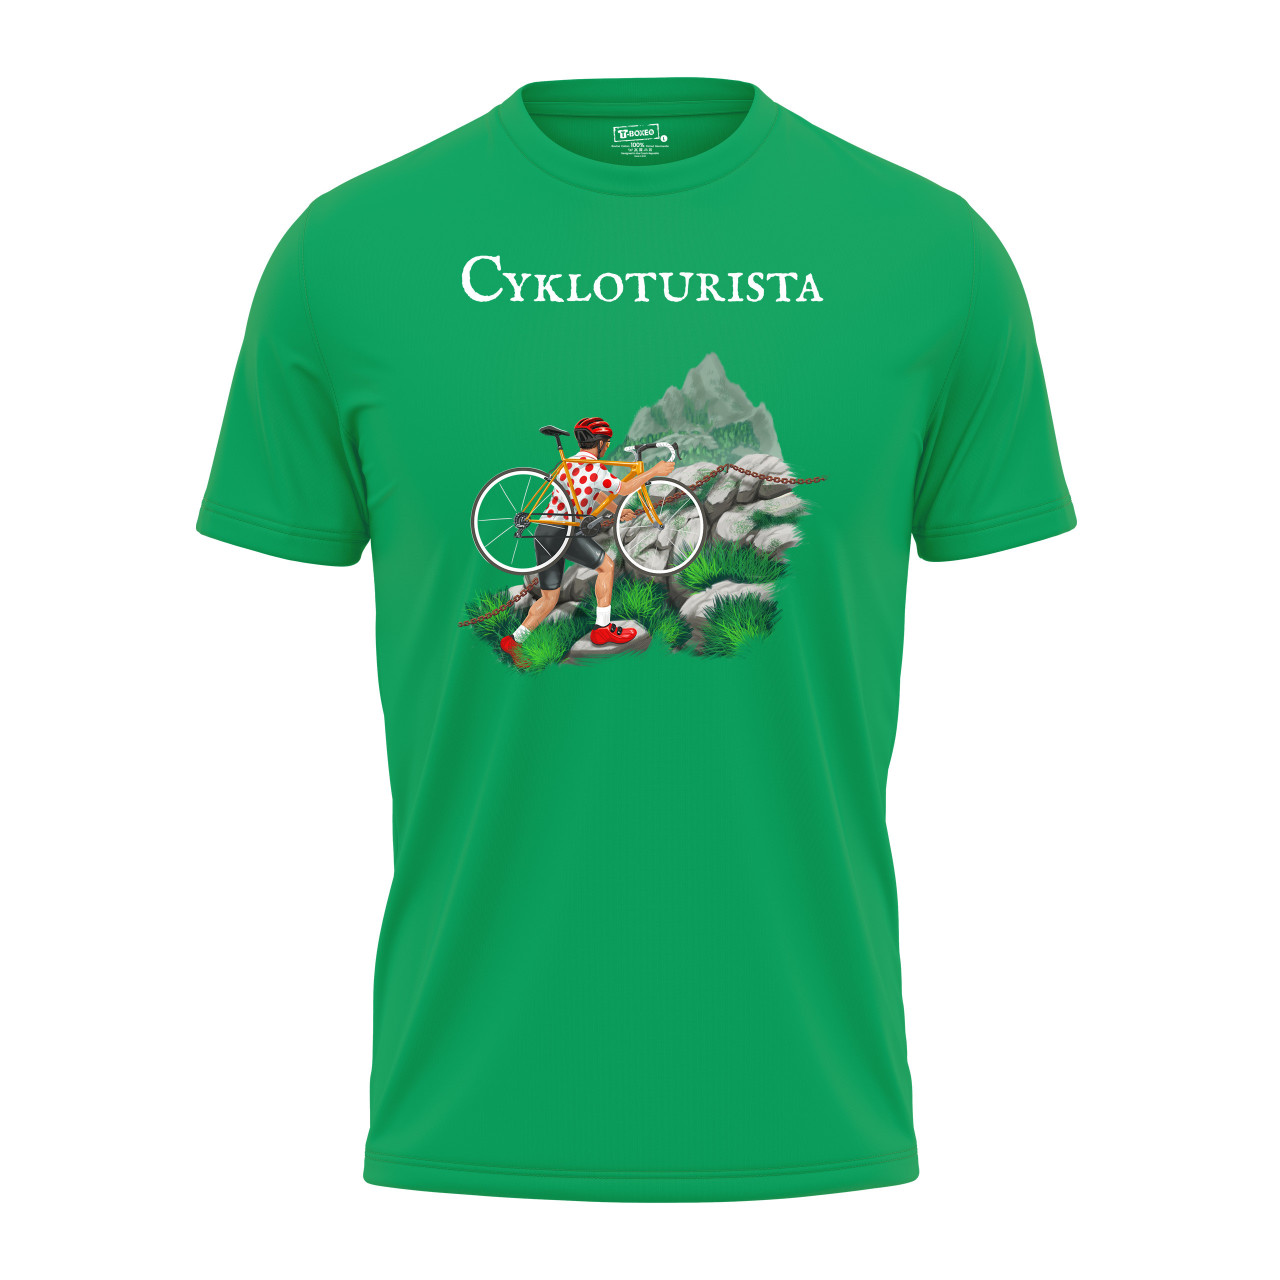 Pánské tričko s potiskem "Cykloturista" 